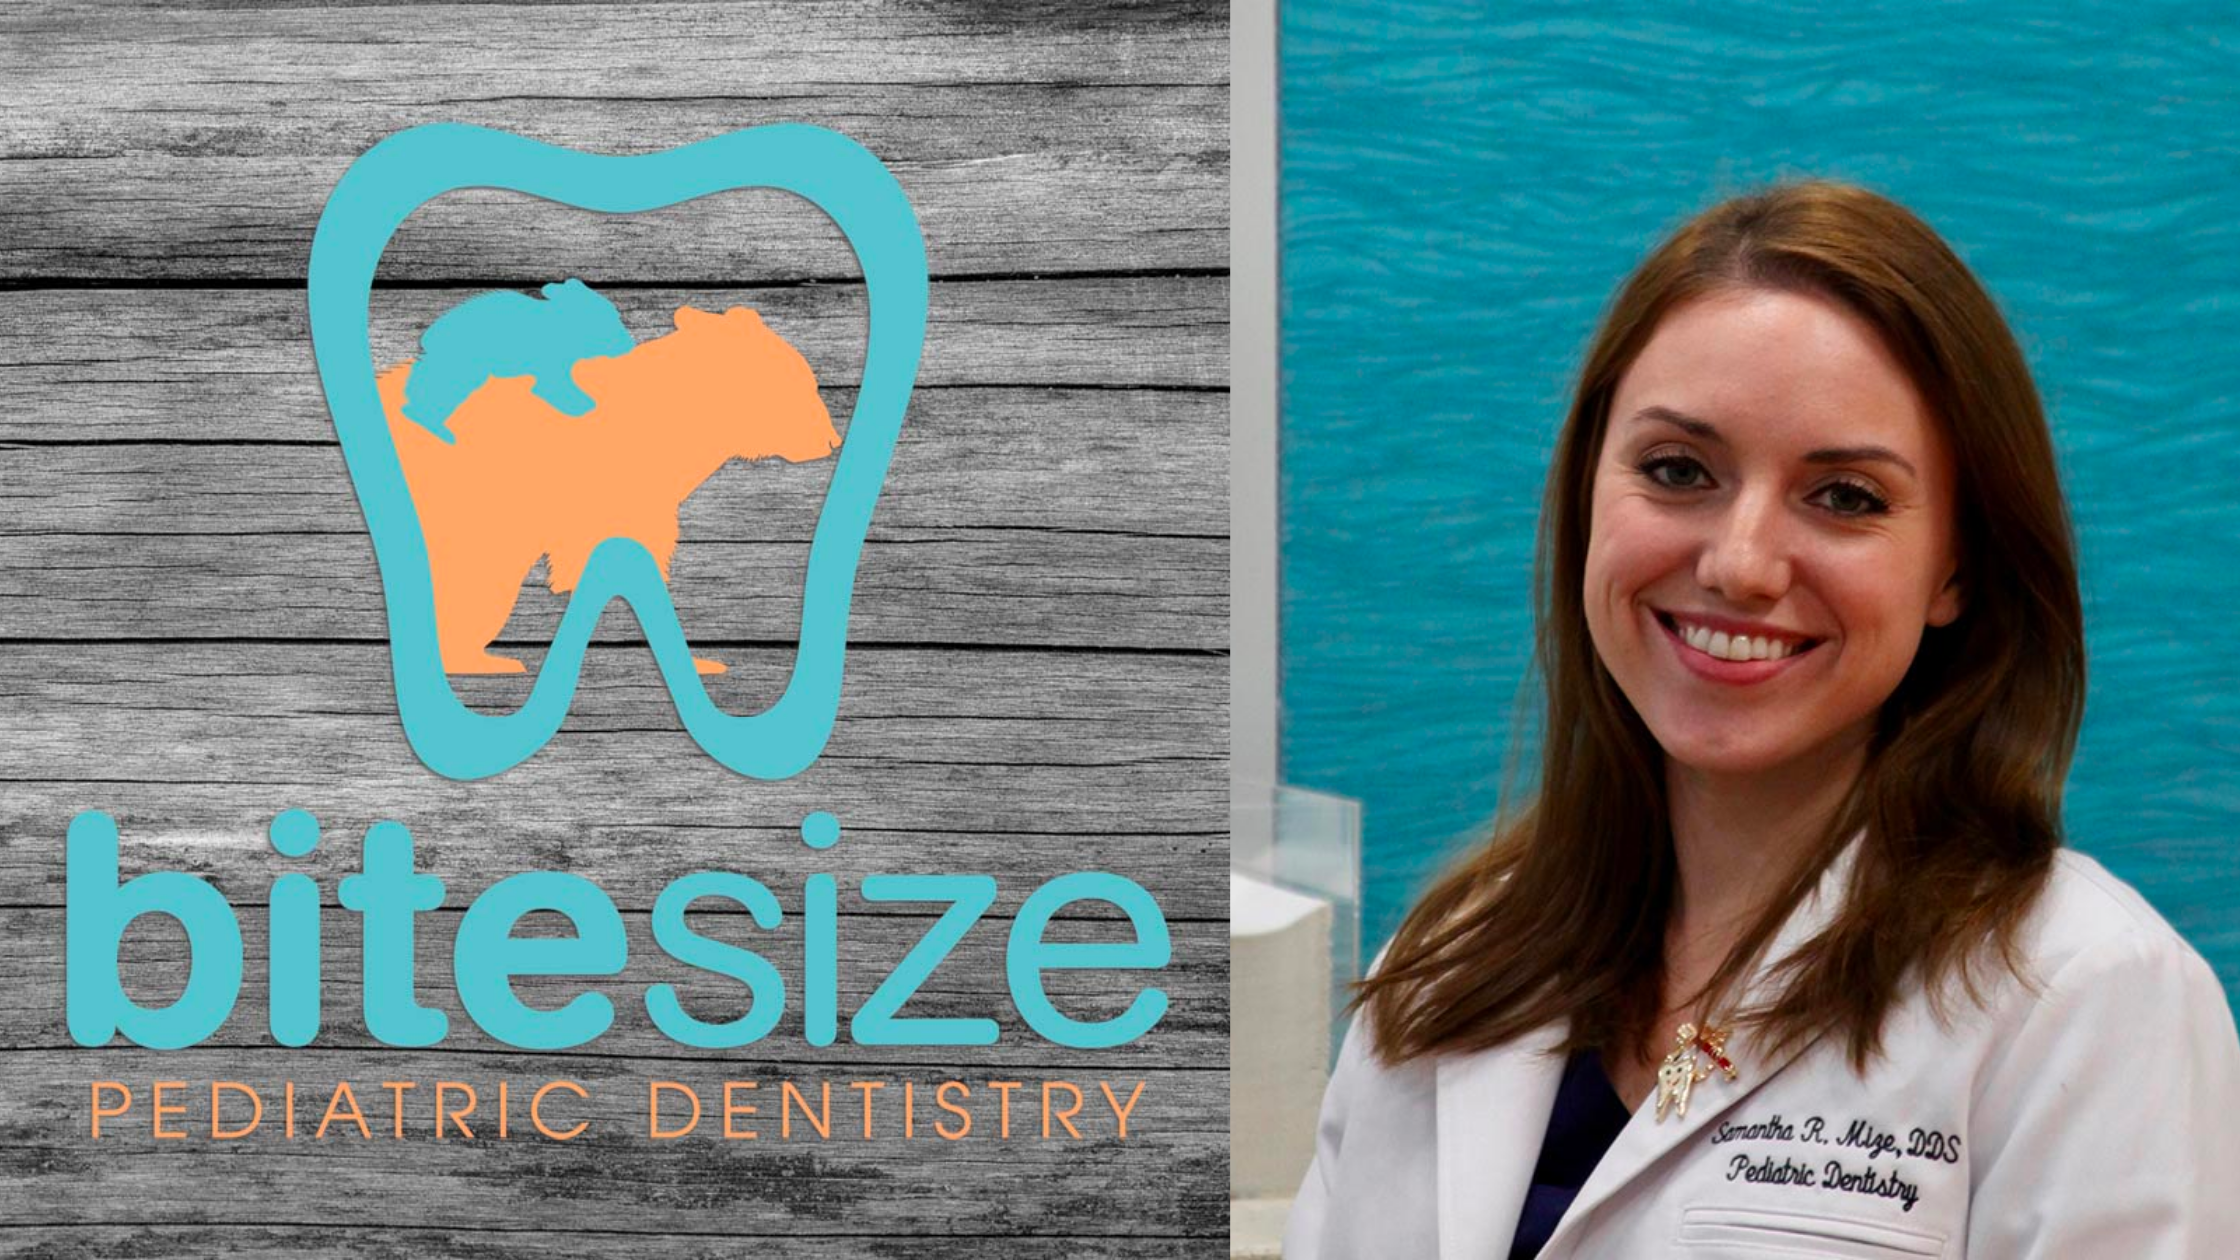 Bitesize Pediatric Dentistry